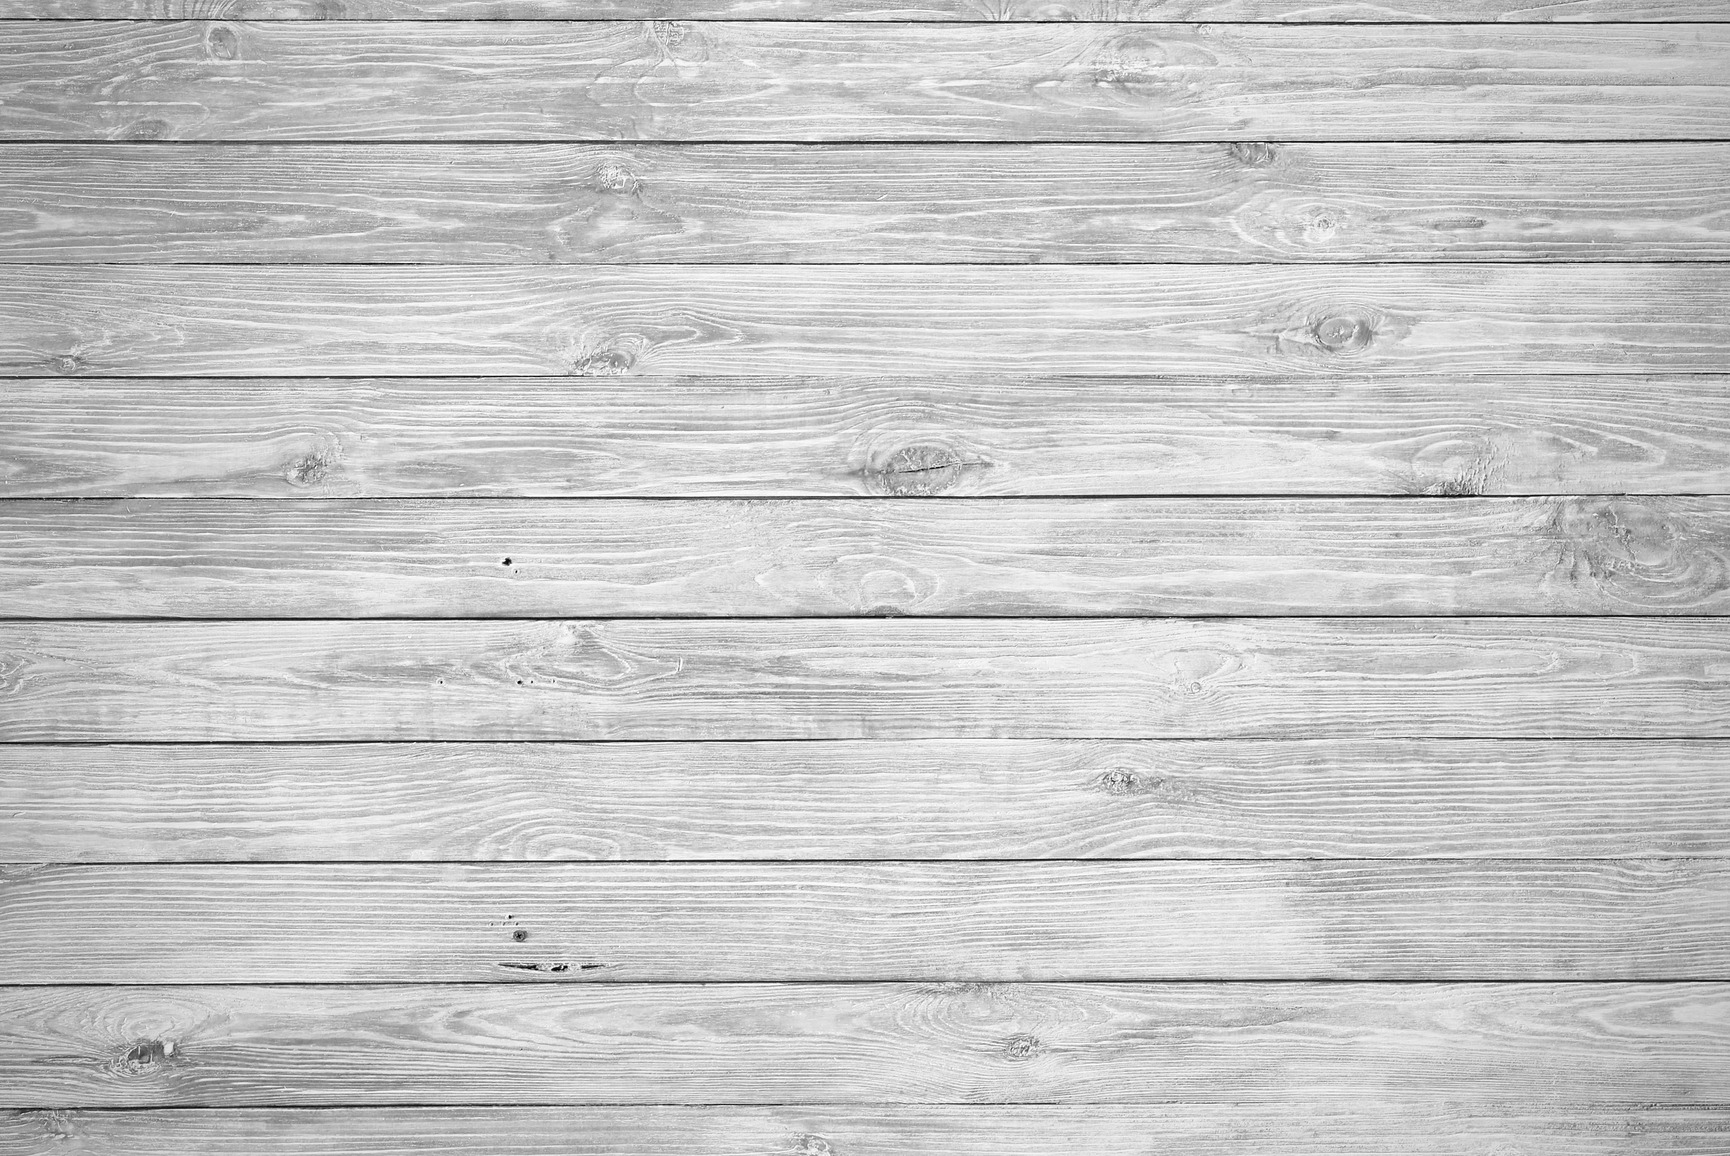 Hình nền gỗ trắng - Bạn đang tìm kiếm một hình nền gỗ trắng cho không gian làm việc hay giải trí của mình? Hãy đến với bộ sưu tập hình nền gỗ trắng của chúng tôi với nhiều mẫu thiết kế độc đáo và hiện đại nhất. Điều này sẽ mang đến không gian tươi mới và phong cách cho bạn!